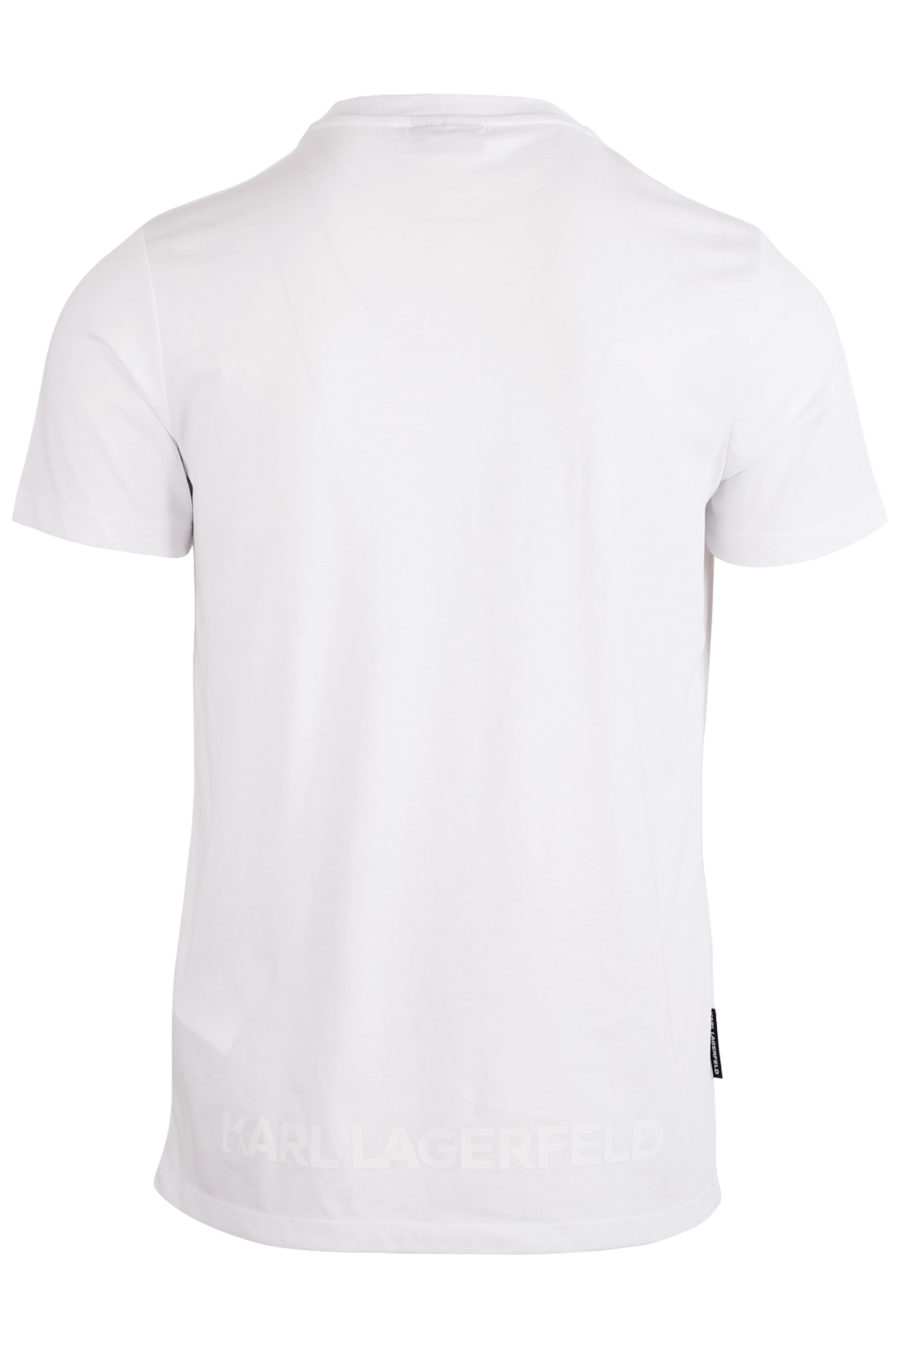 Camiseta blanca con la silueta del diseñador con el logo detrás - IMG 8117 copia